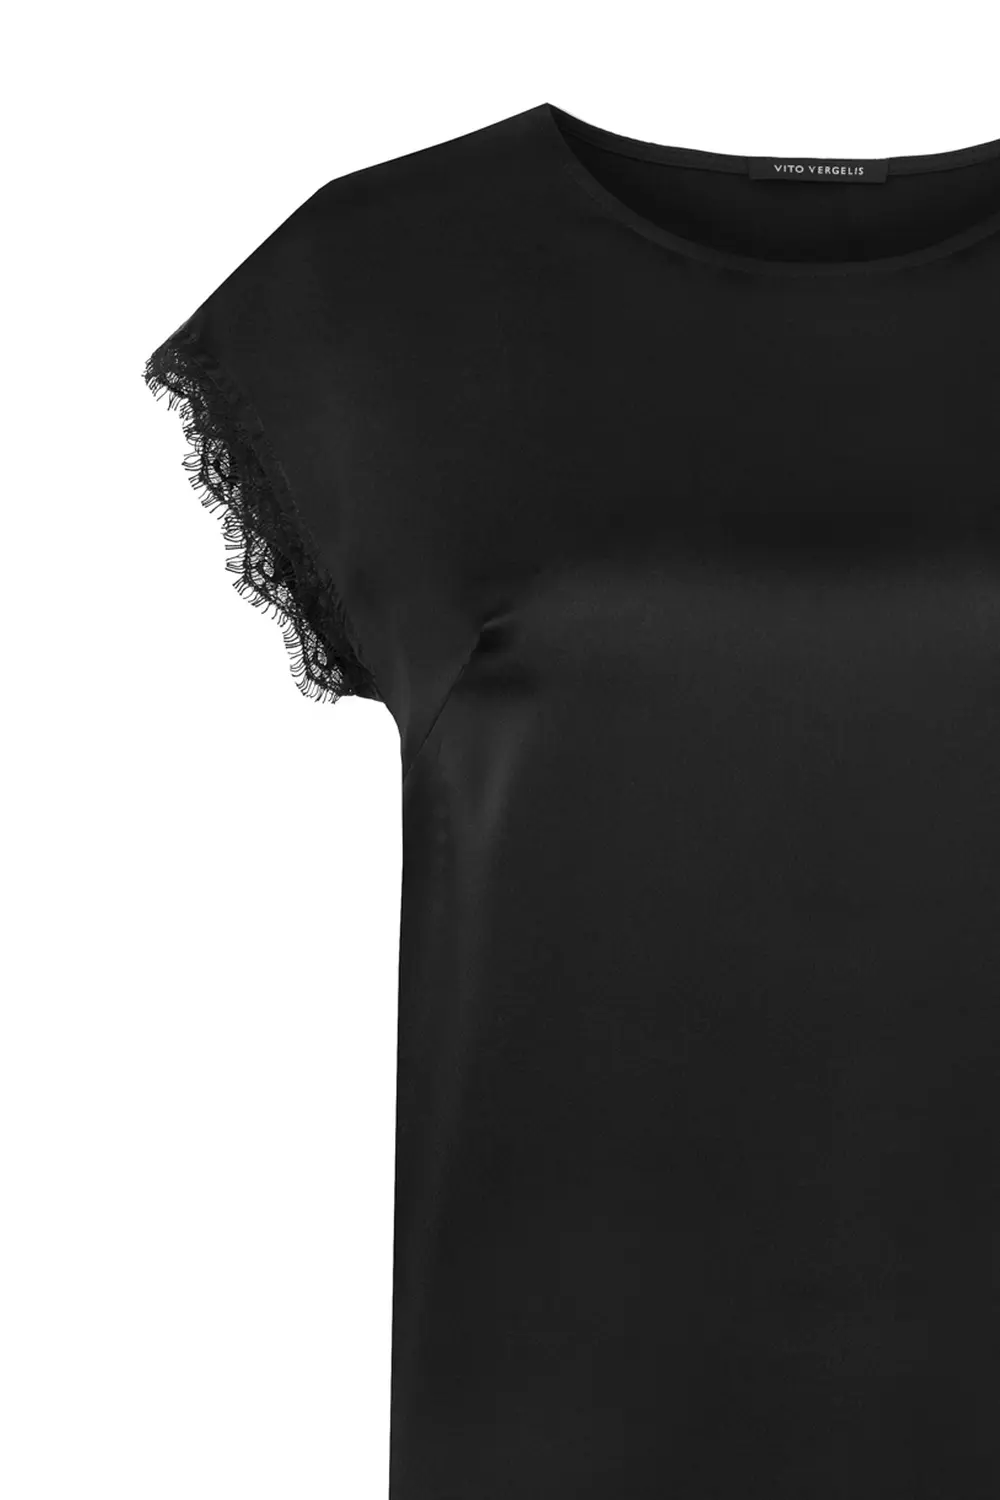 Czarna bluzka damska z koronką wizytowa bluzka satynowa polska marka duże rozmiary Vito Vergelis